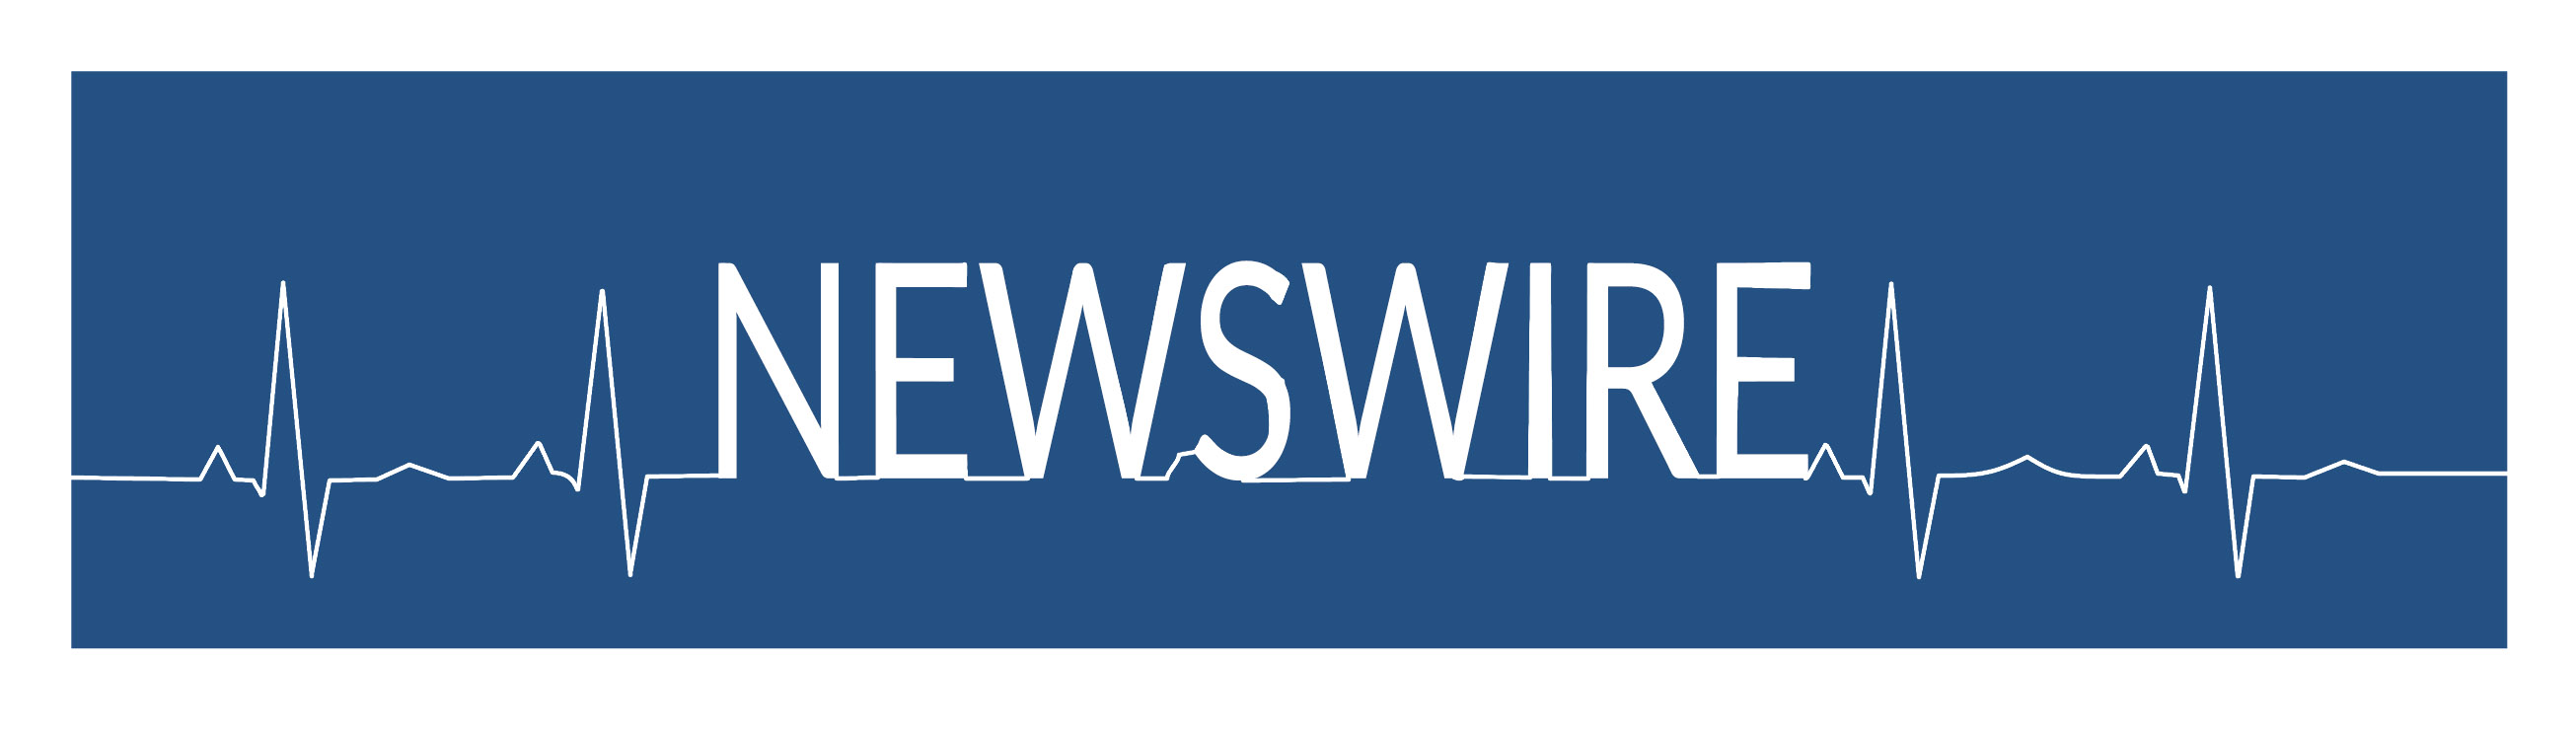 newswire banner